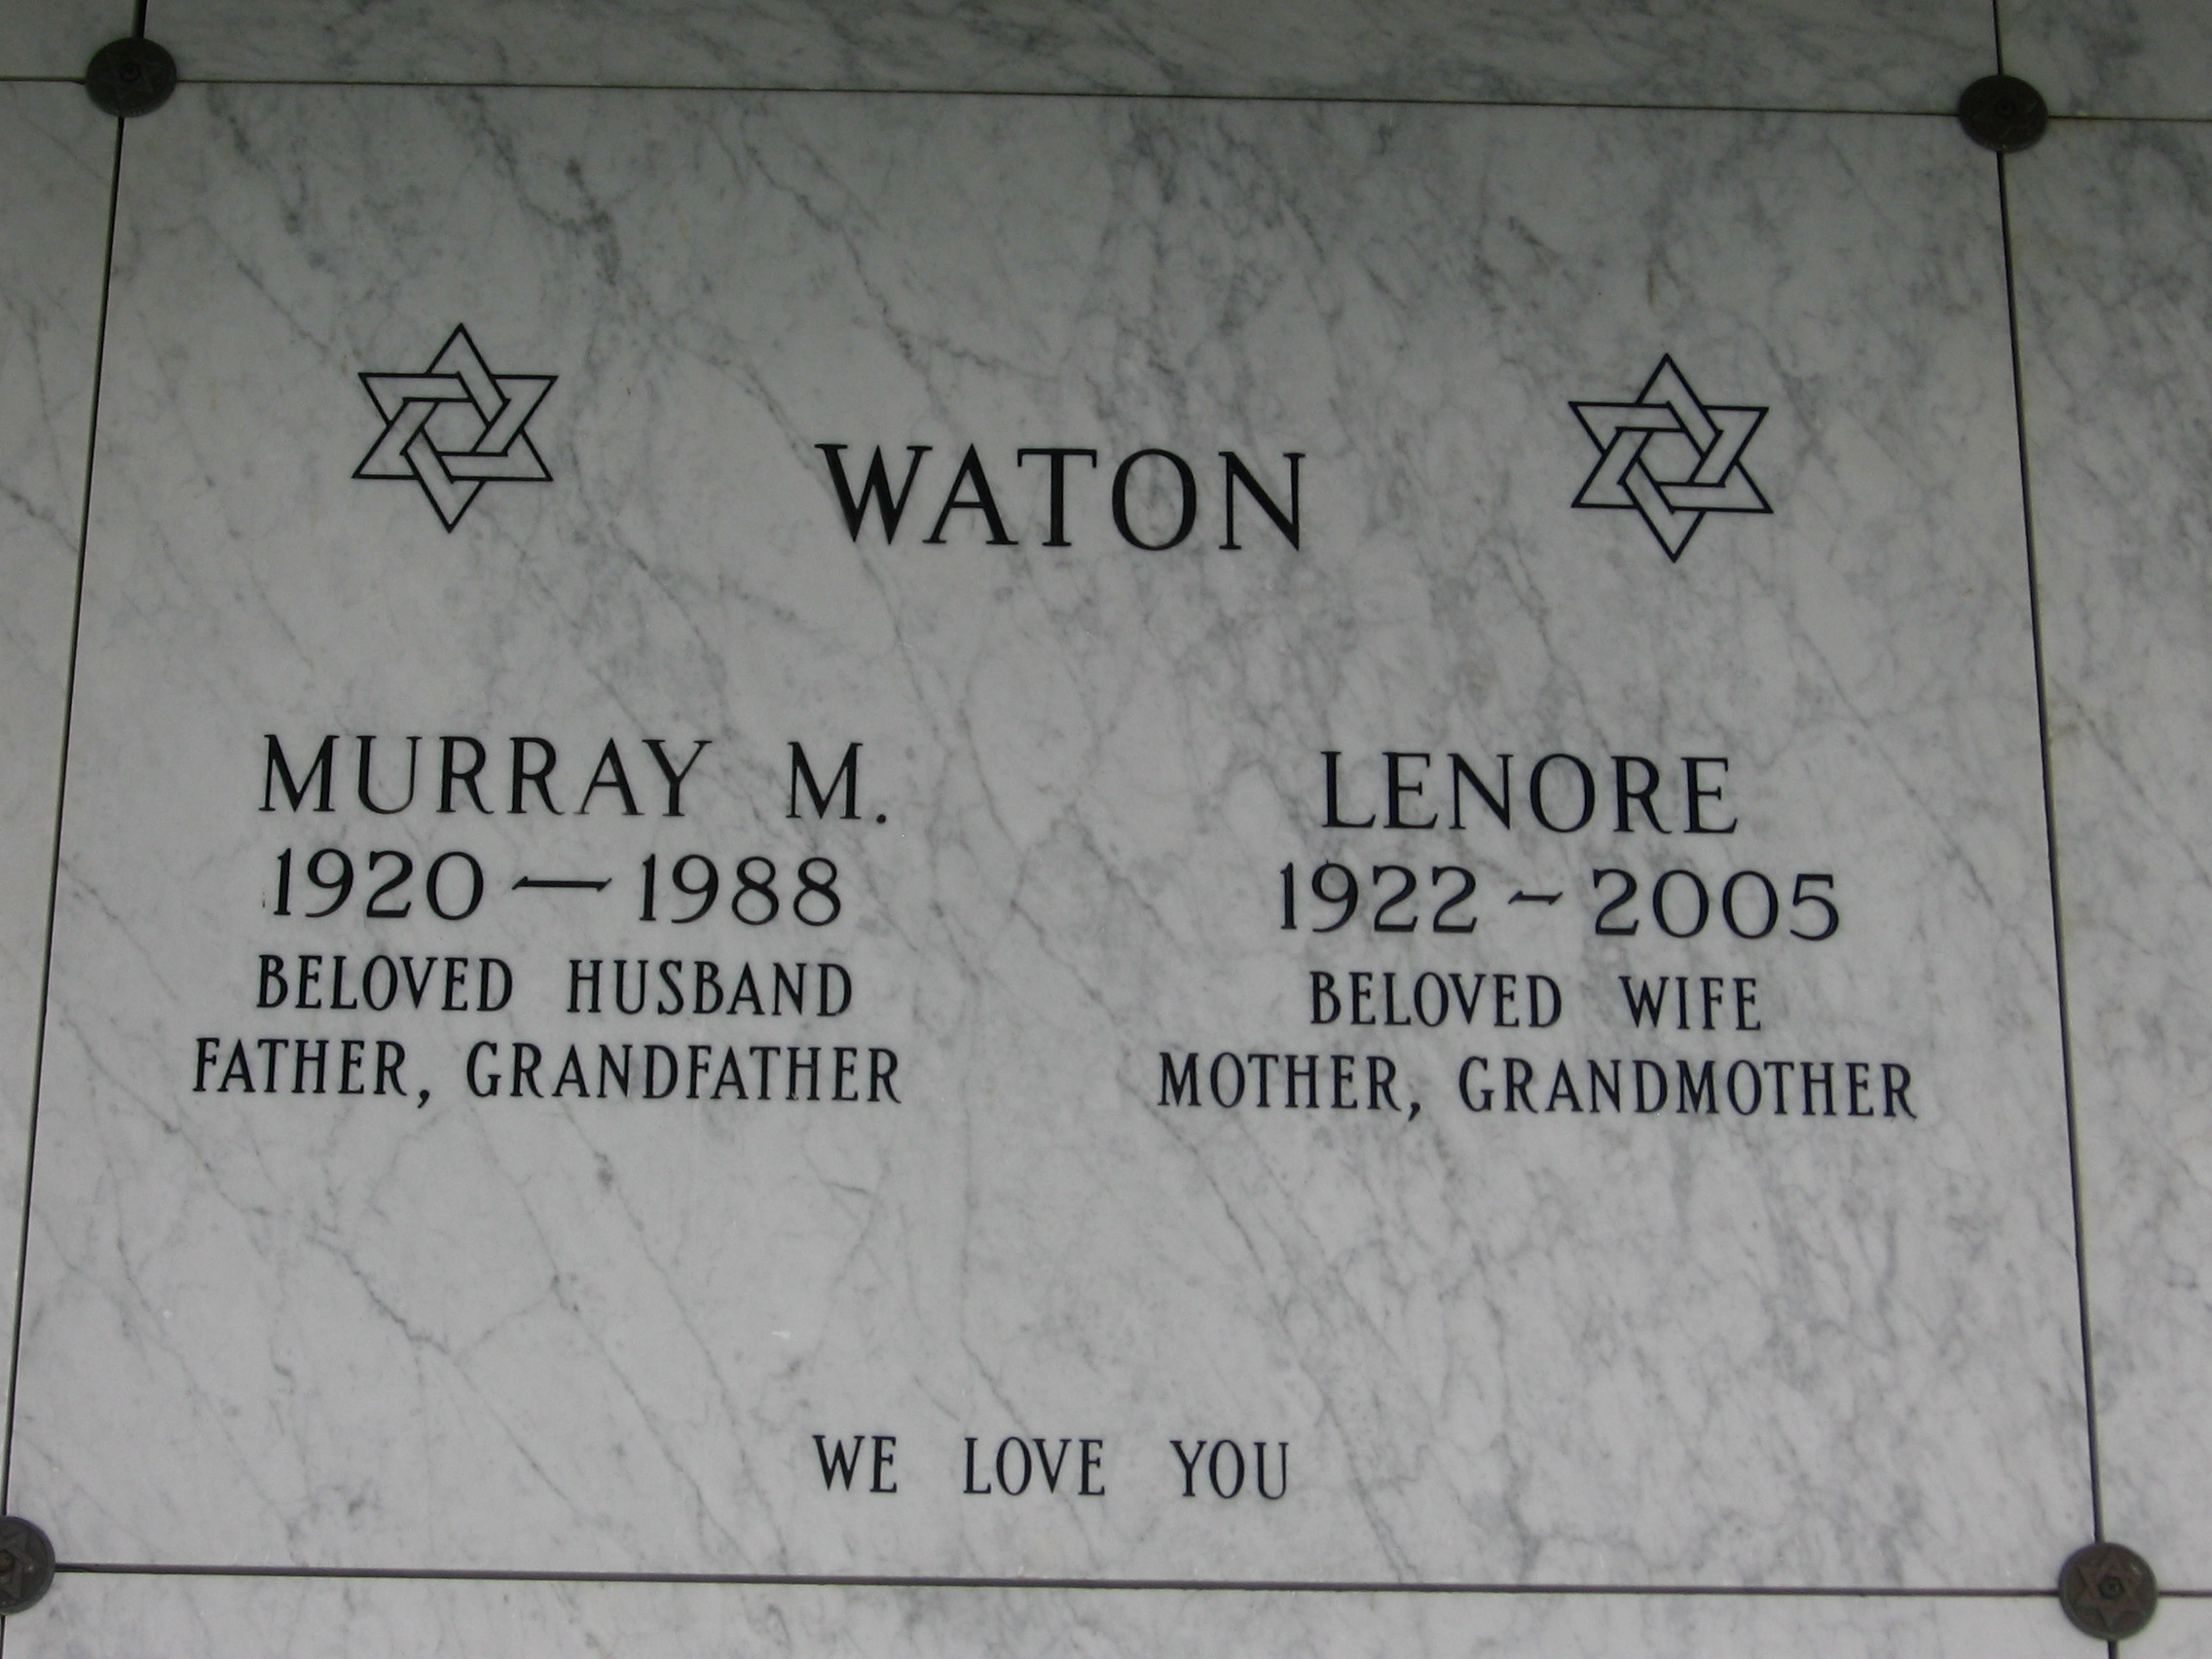 Murray M Waton